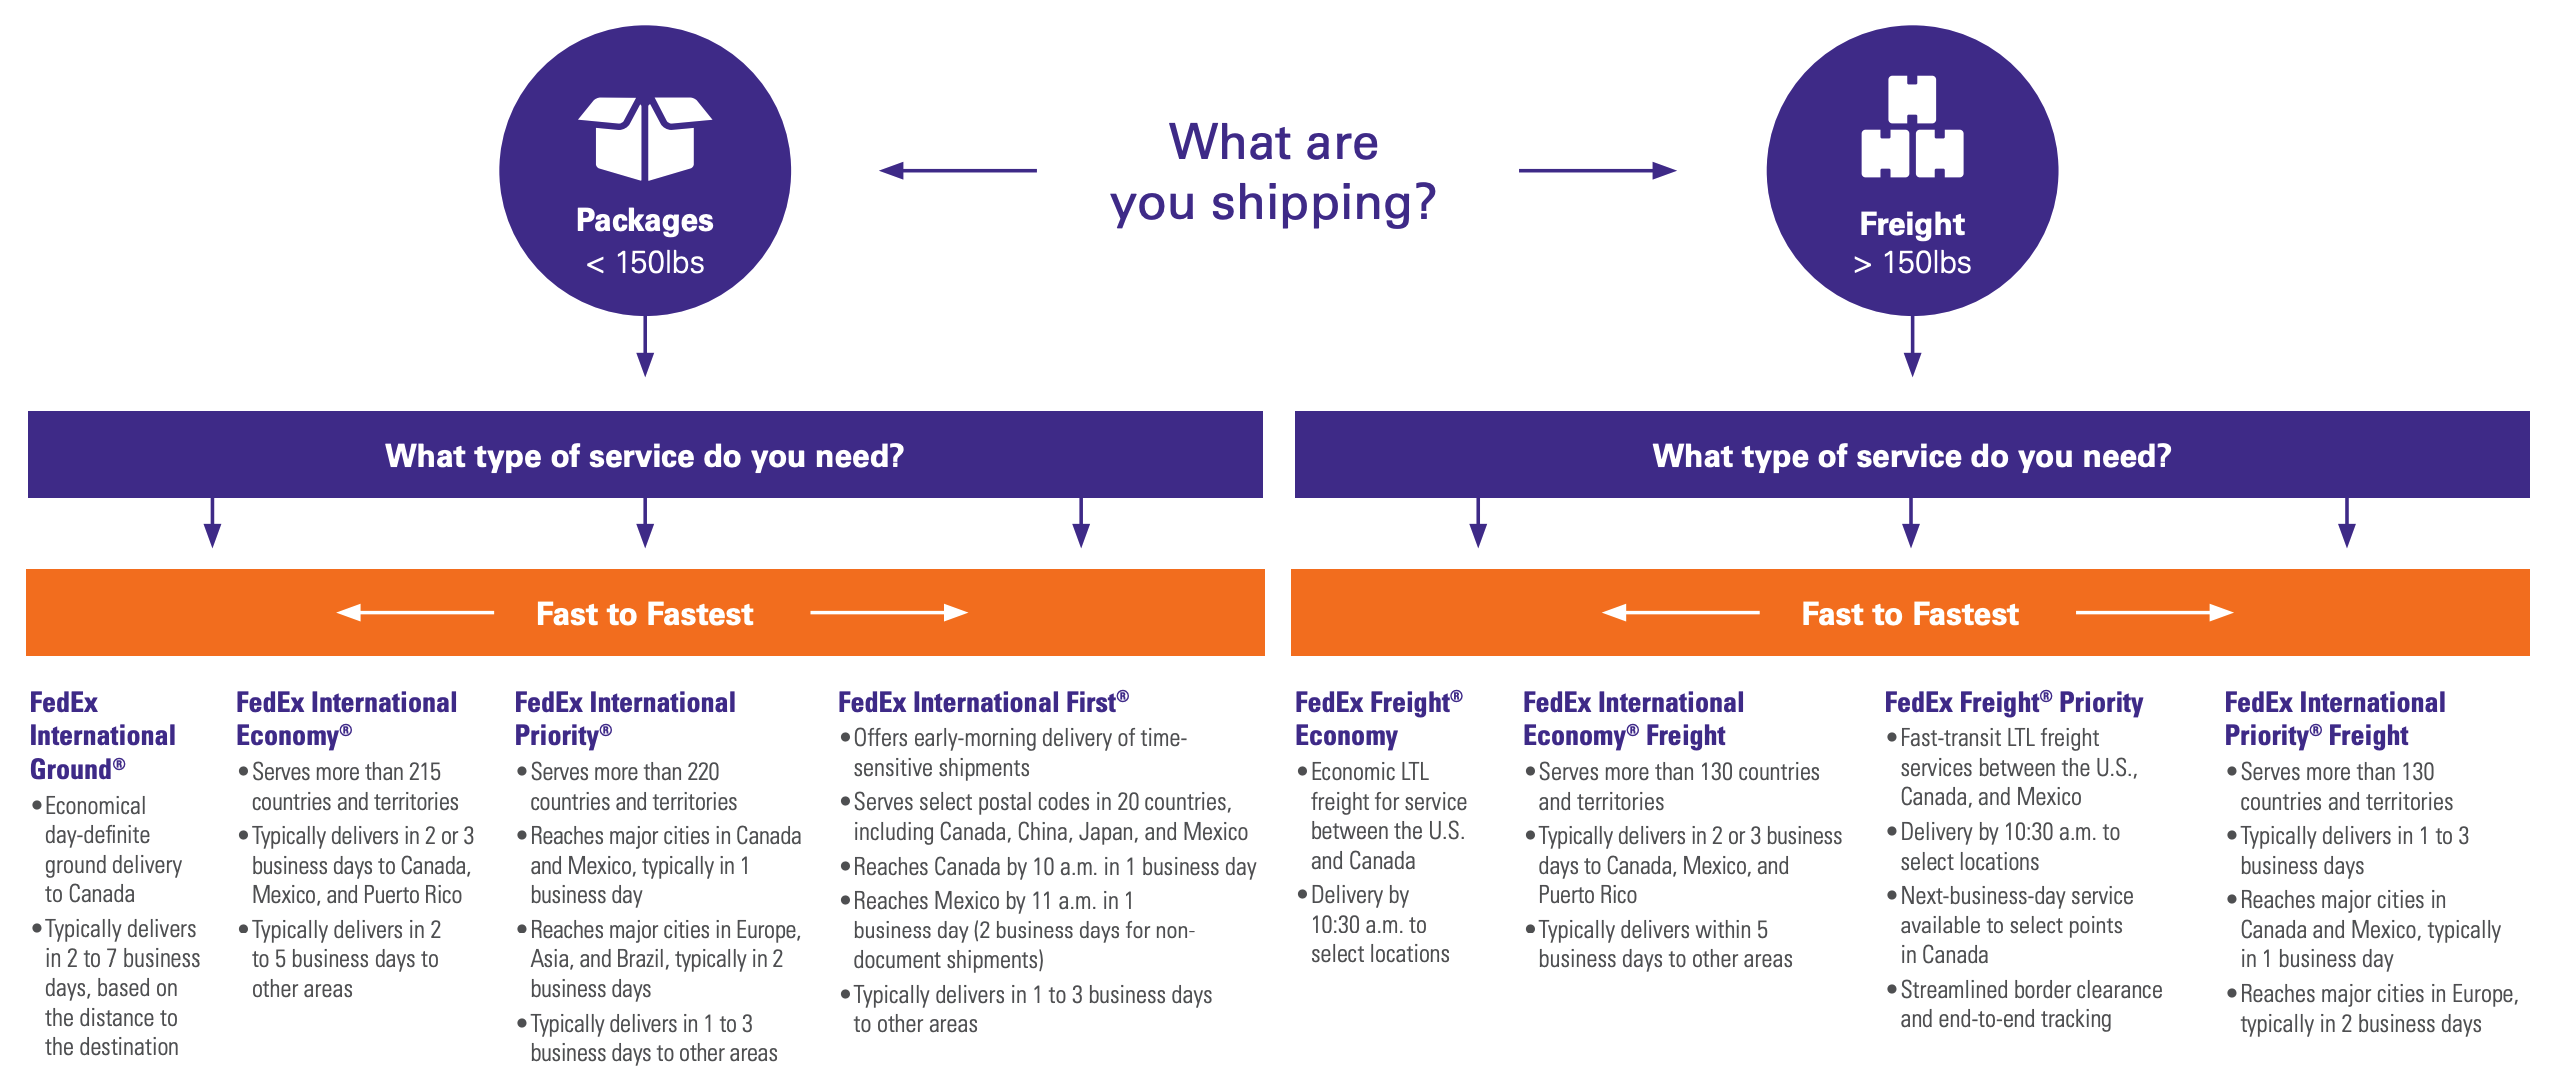 fedex international shipping